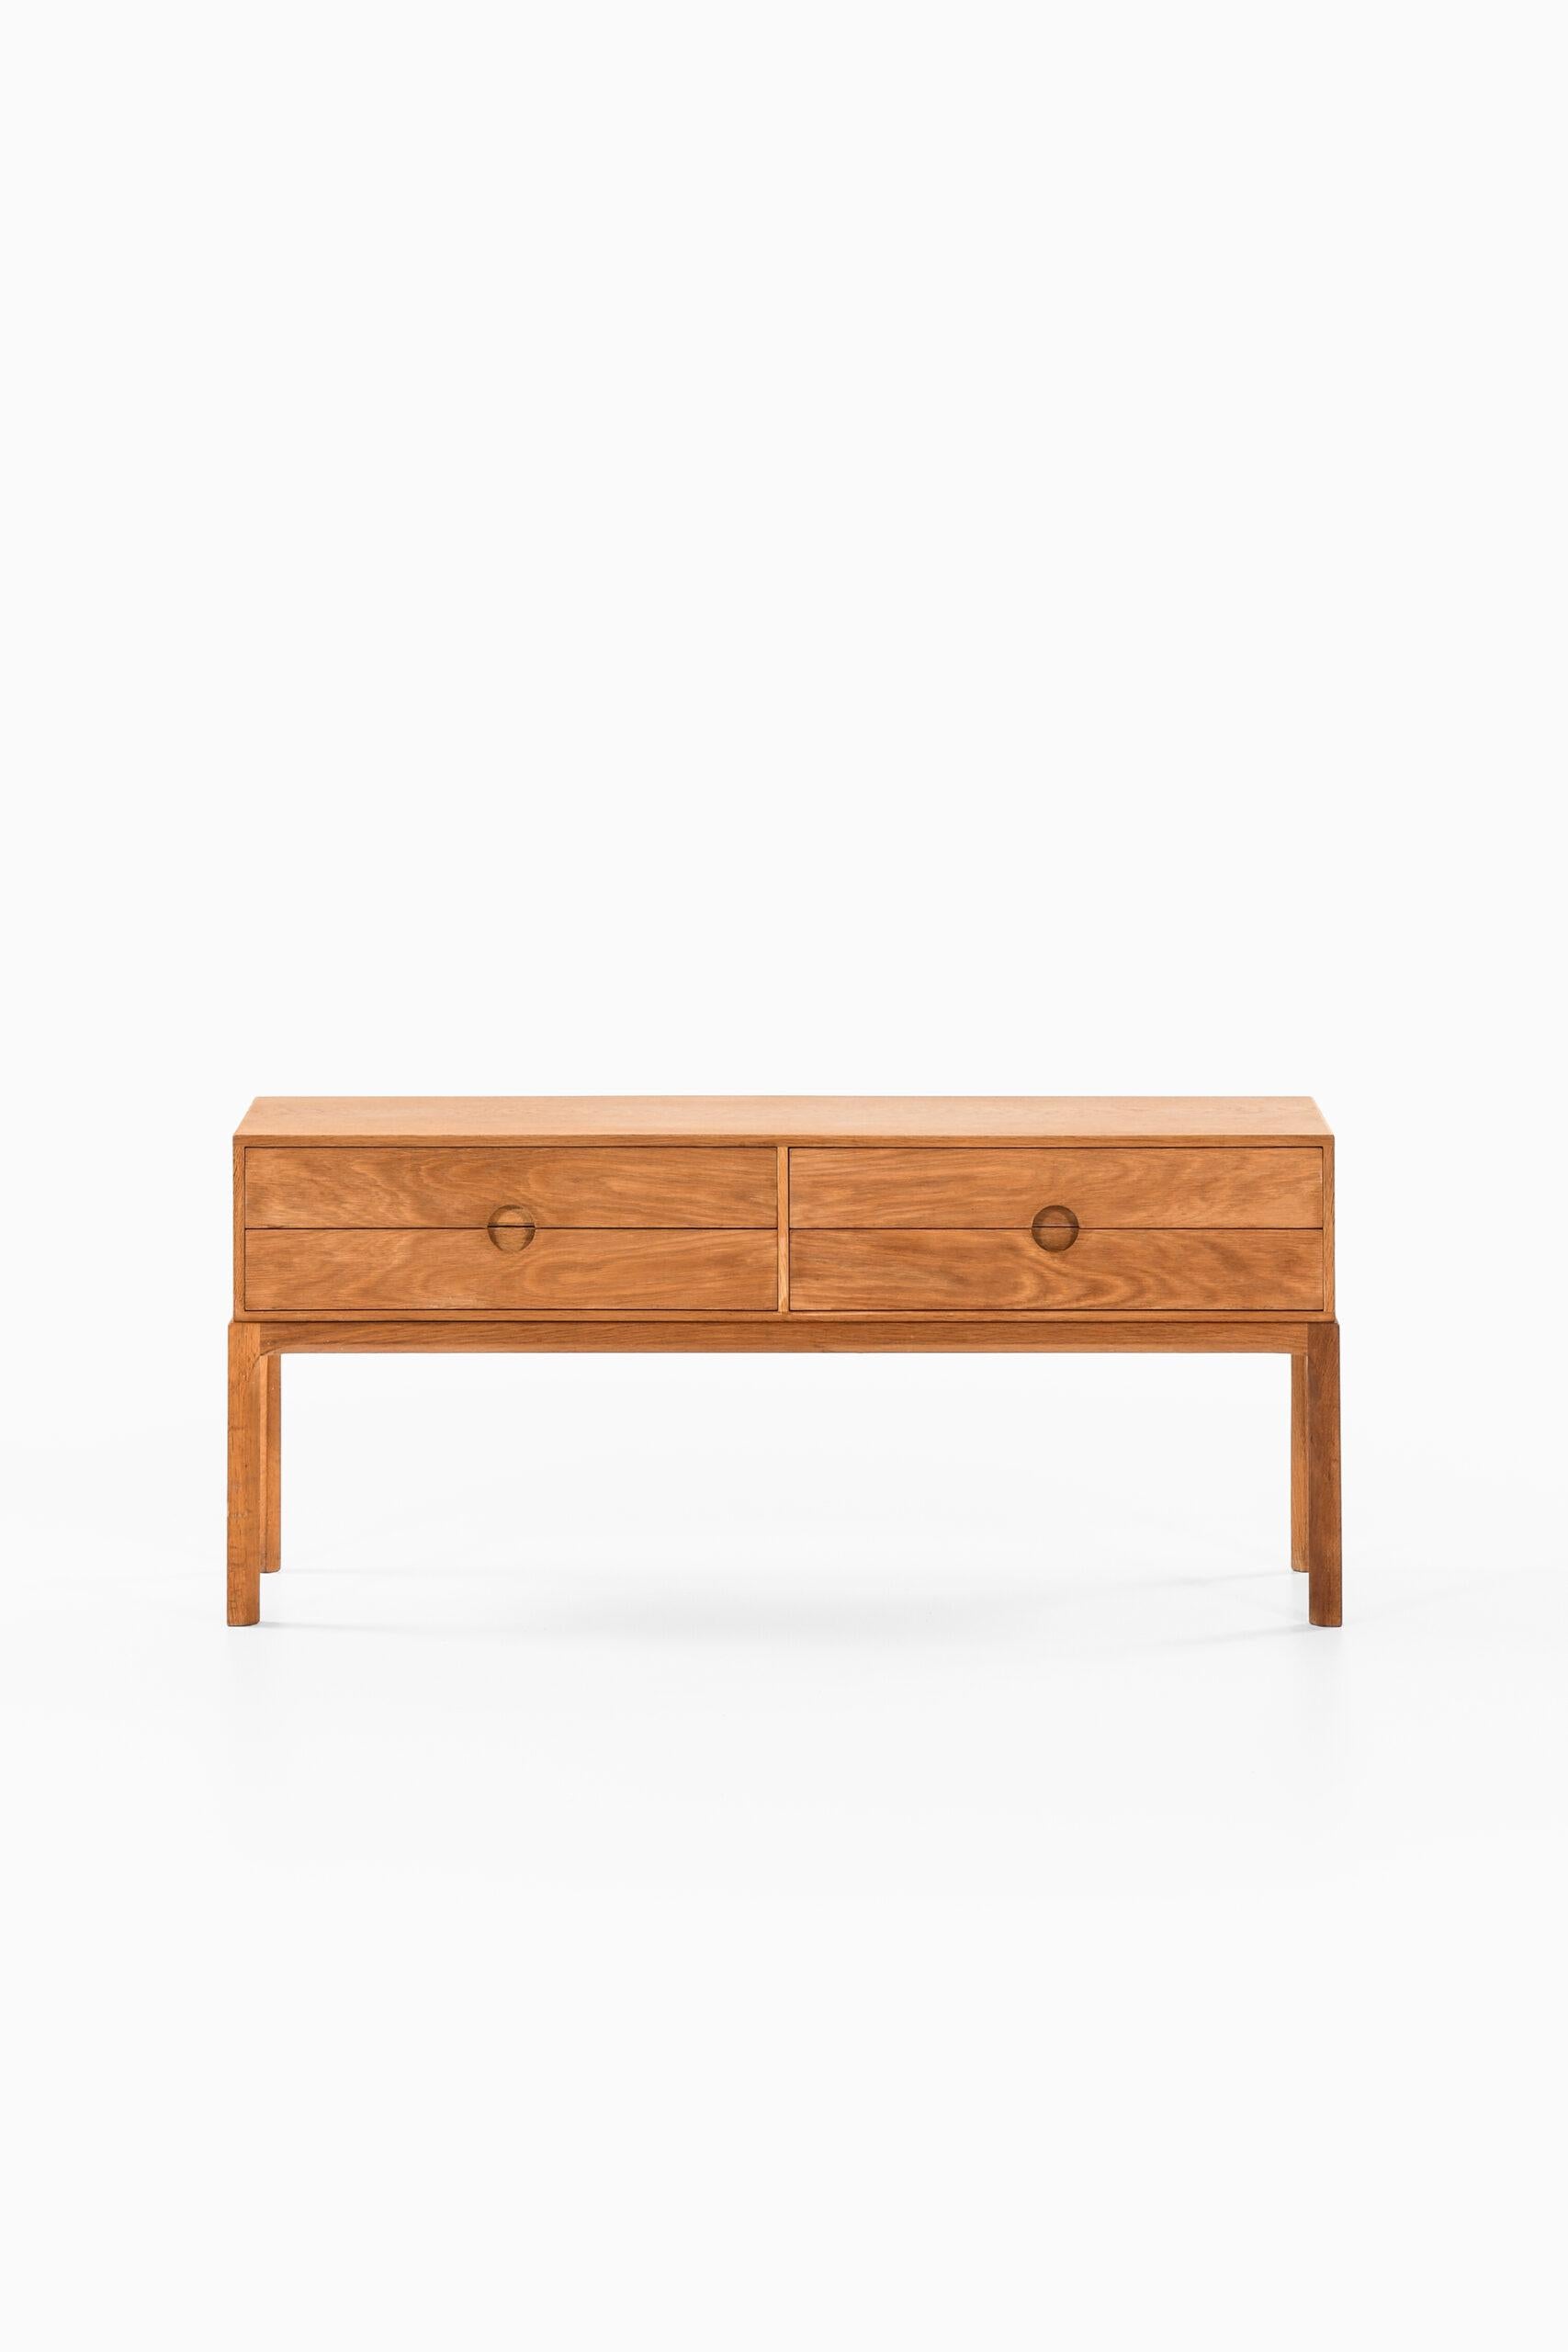 Oak Kai Kristiansen Bureau / Side Table Model 394 by Aksel Kjersgaard in Denmark For Sale